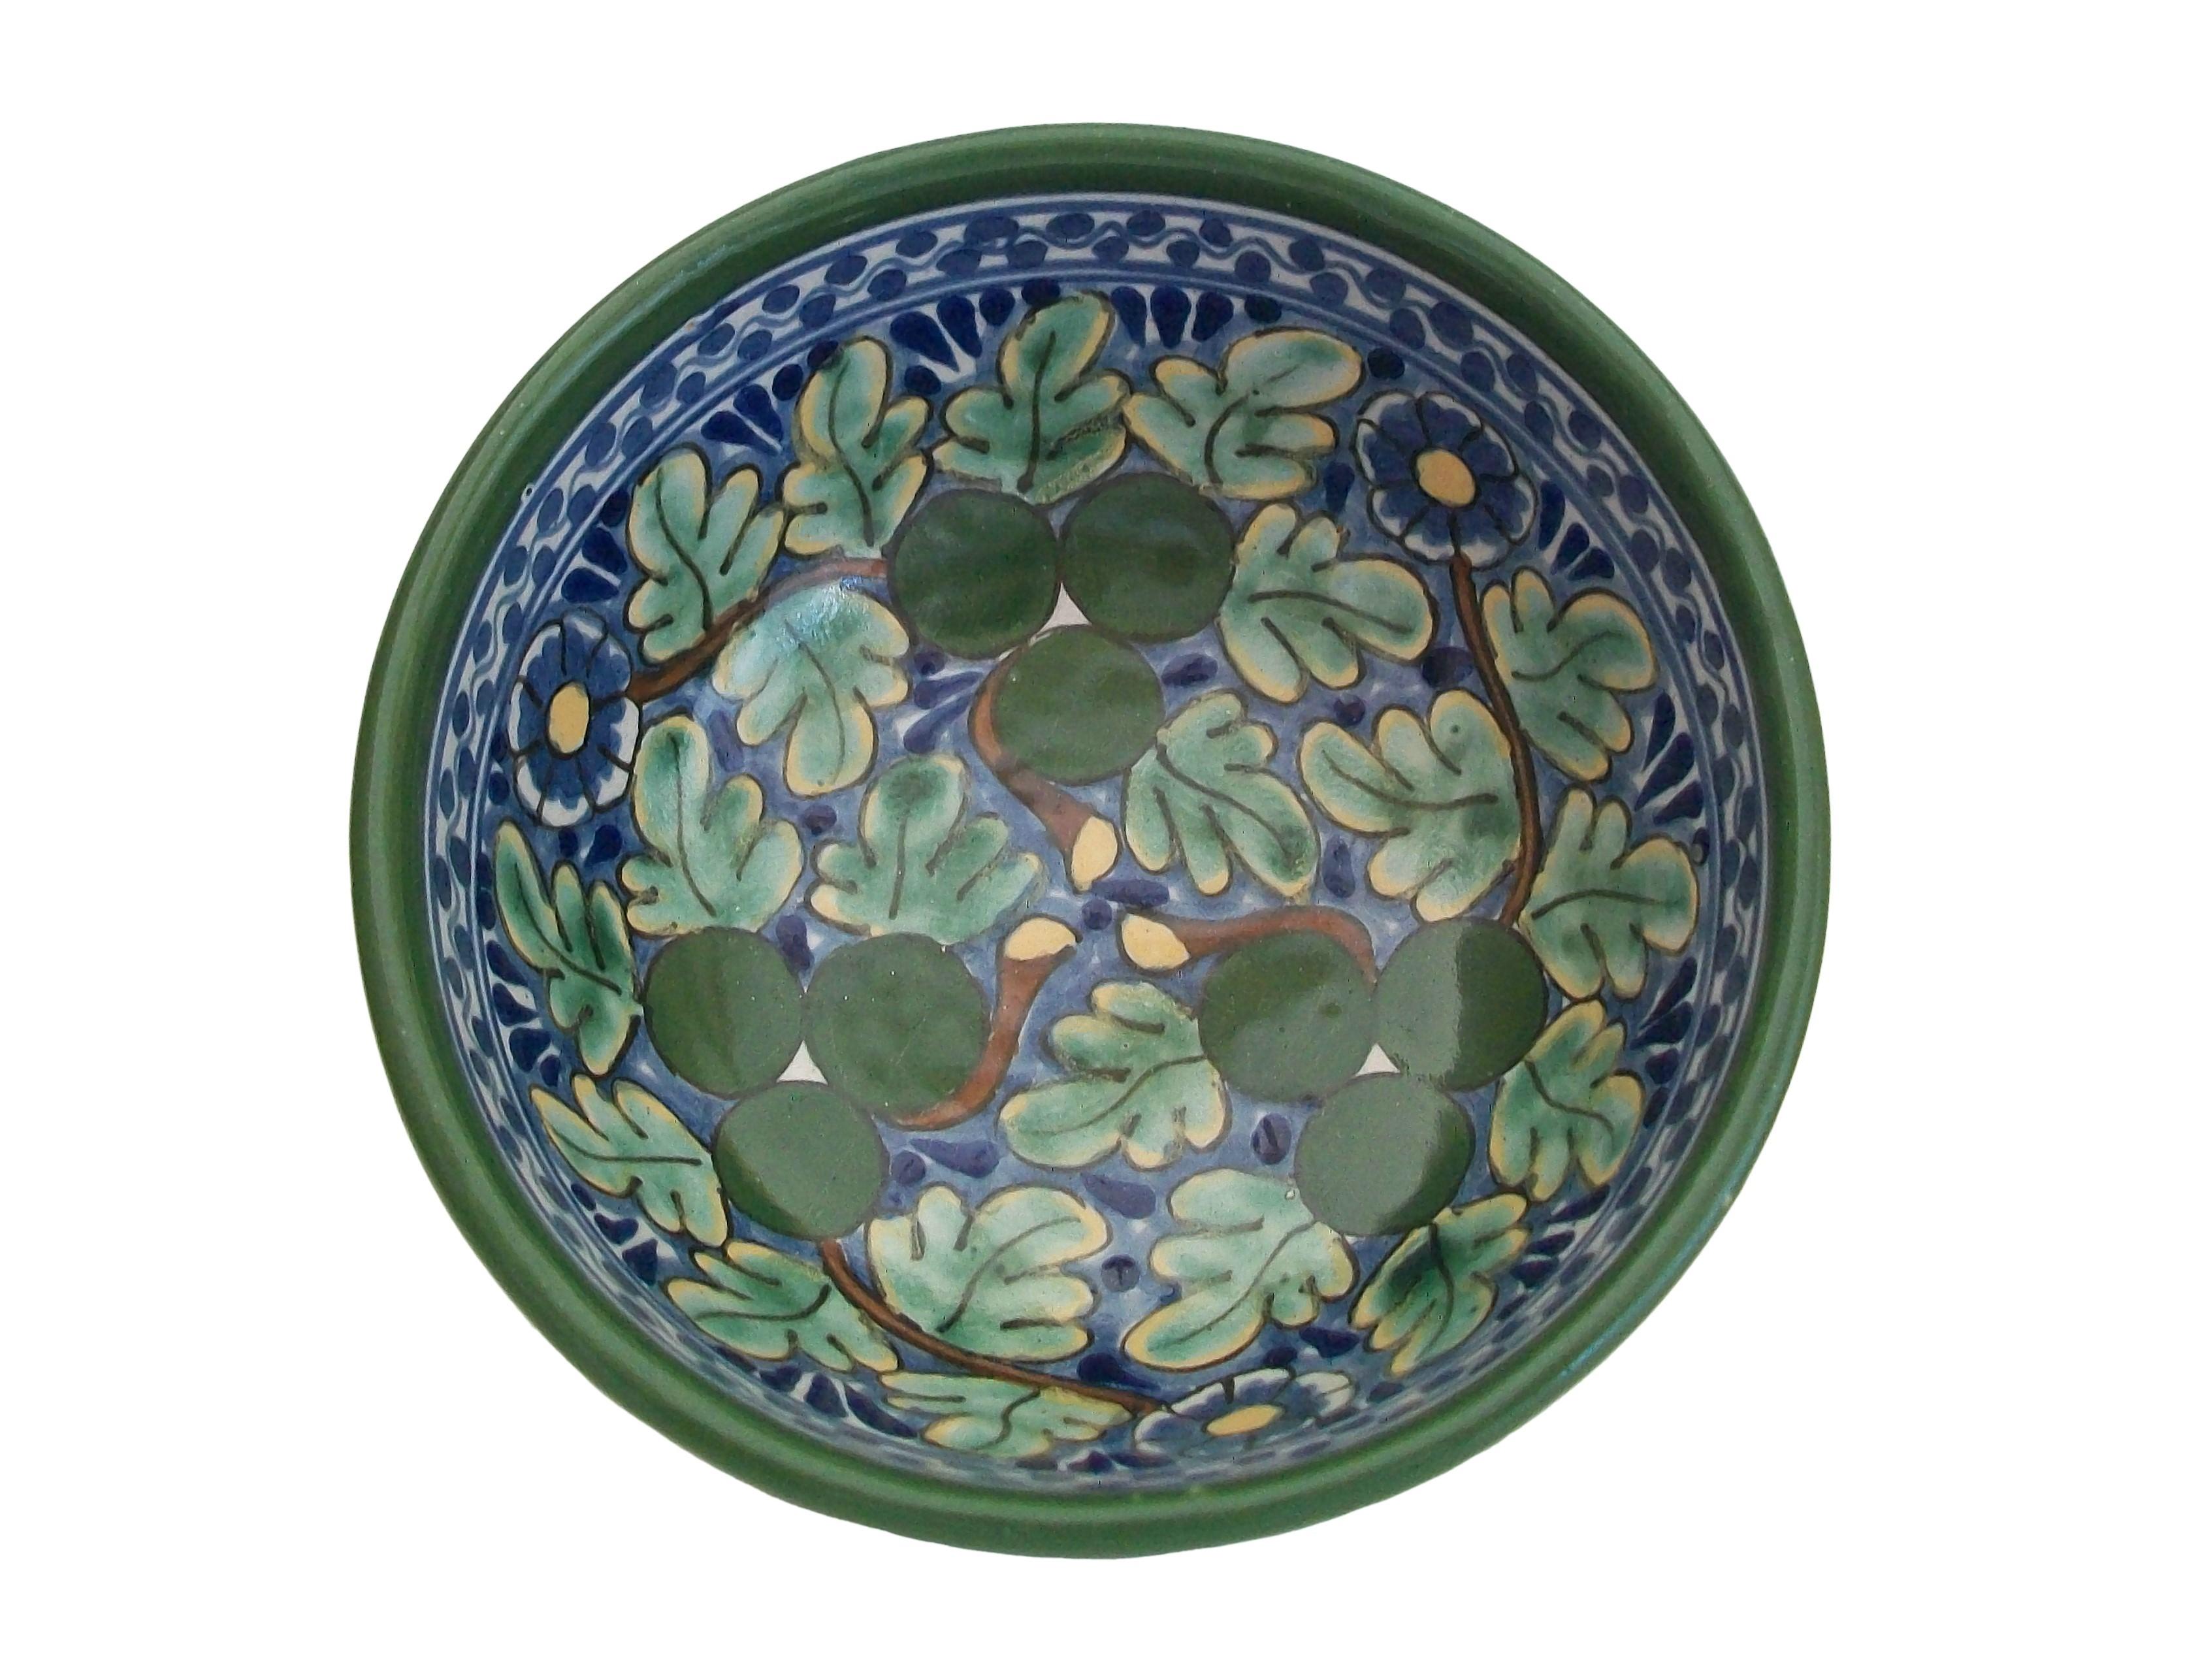 LA CORONA - Bol vintage en céramique Talavera peint à la main - de belle qualité - présentant un motif général de feuilles et de fleurs en bleu et vert - signé sur la base - Mexique (Tlaxcala) - fin du 20e siècle.

Excellent état vintage - aucune